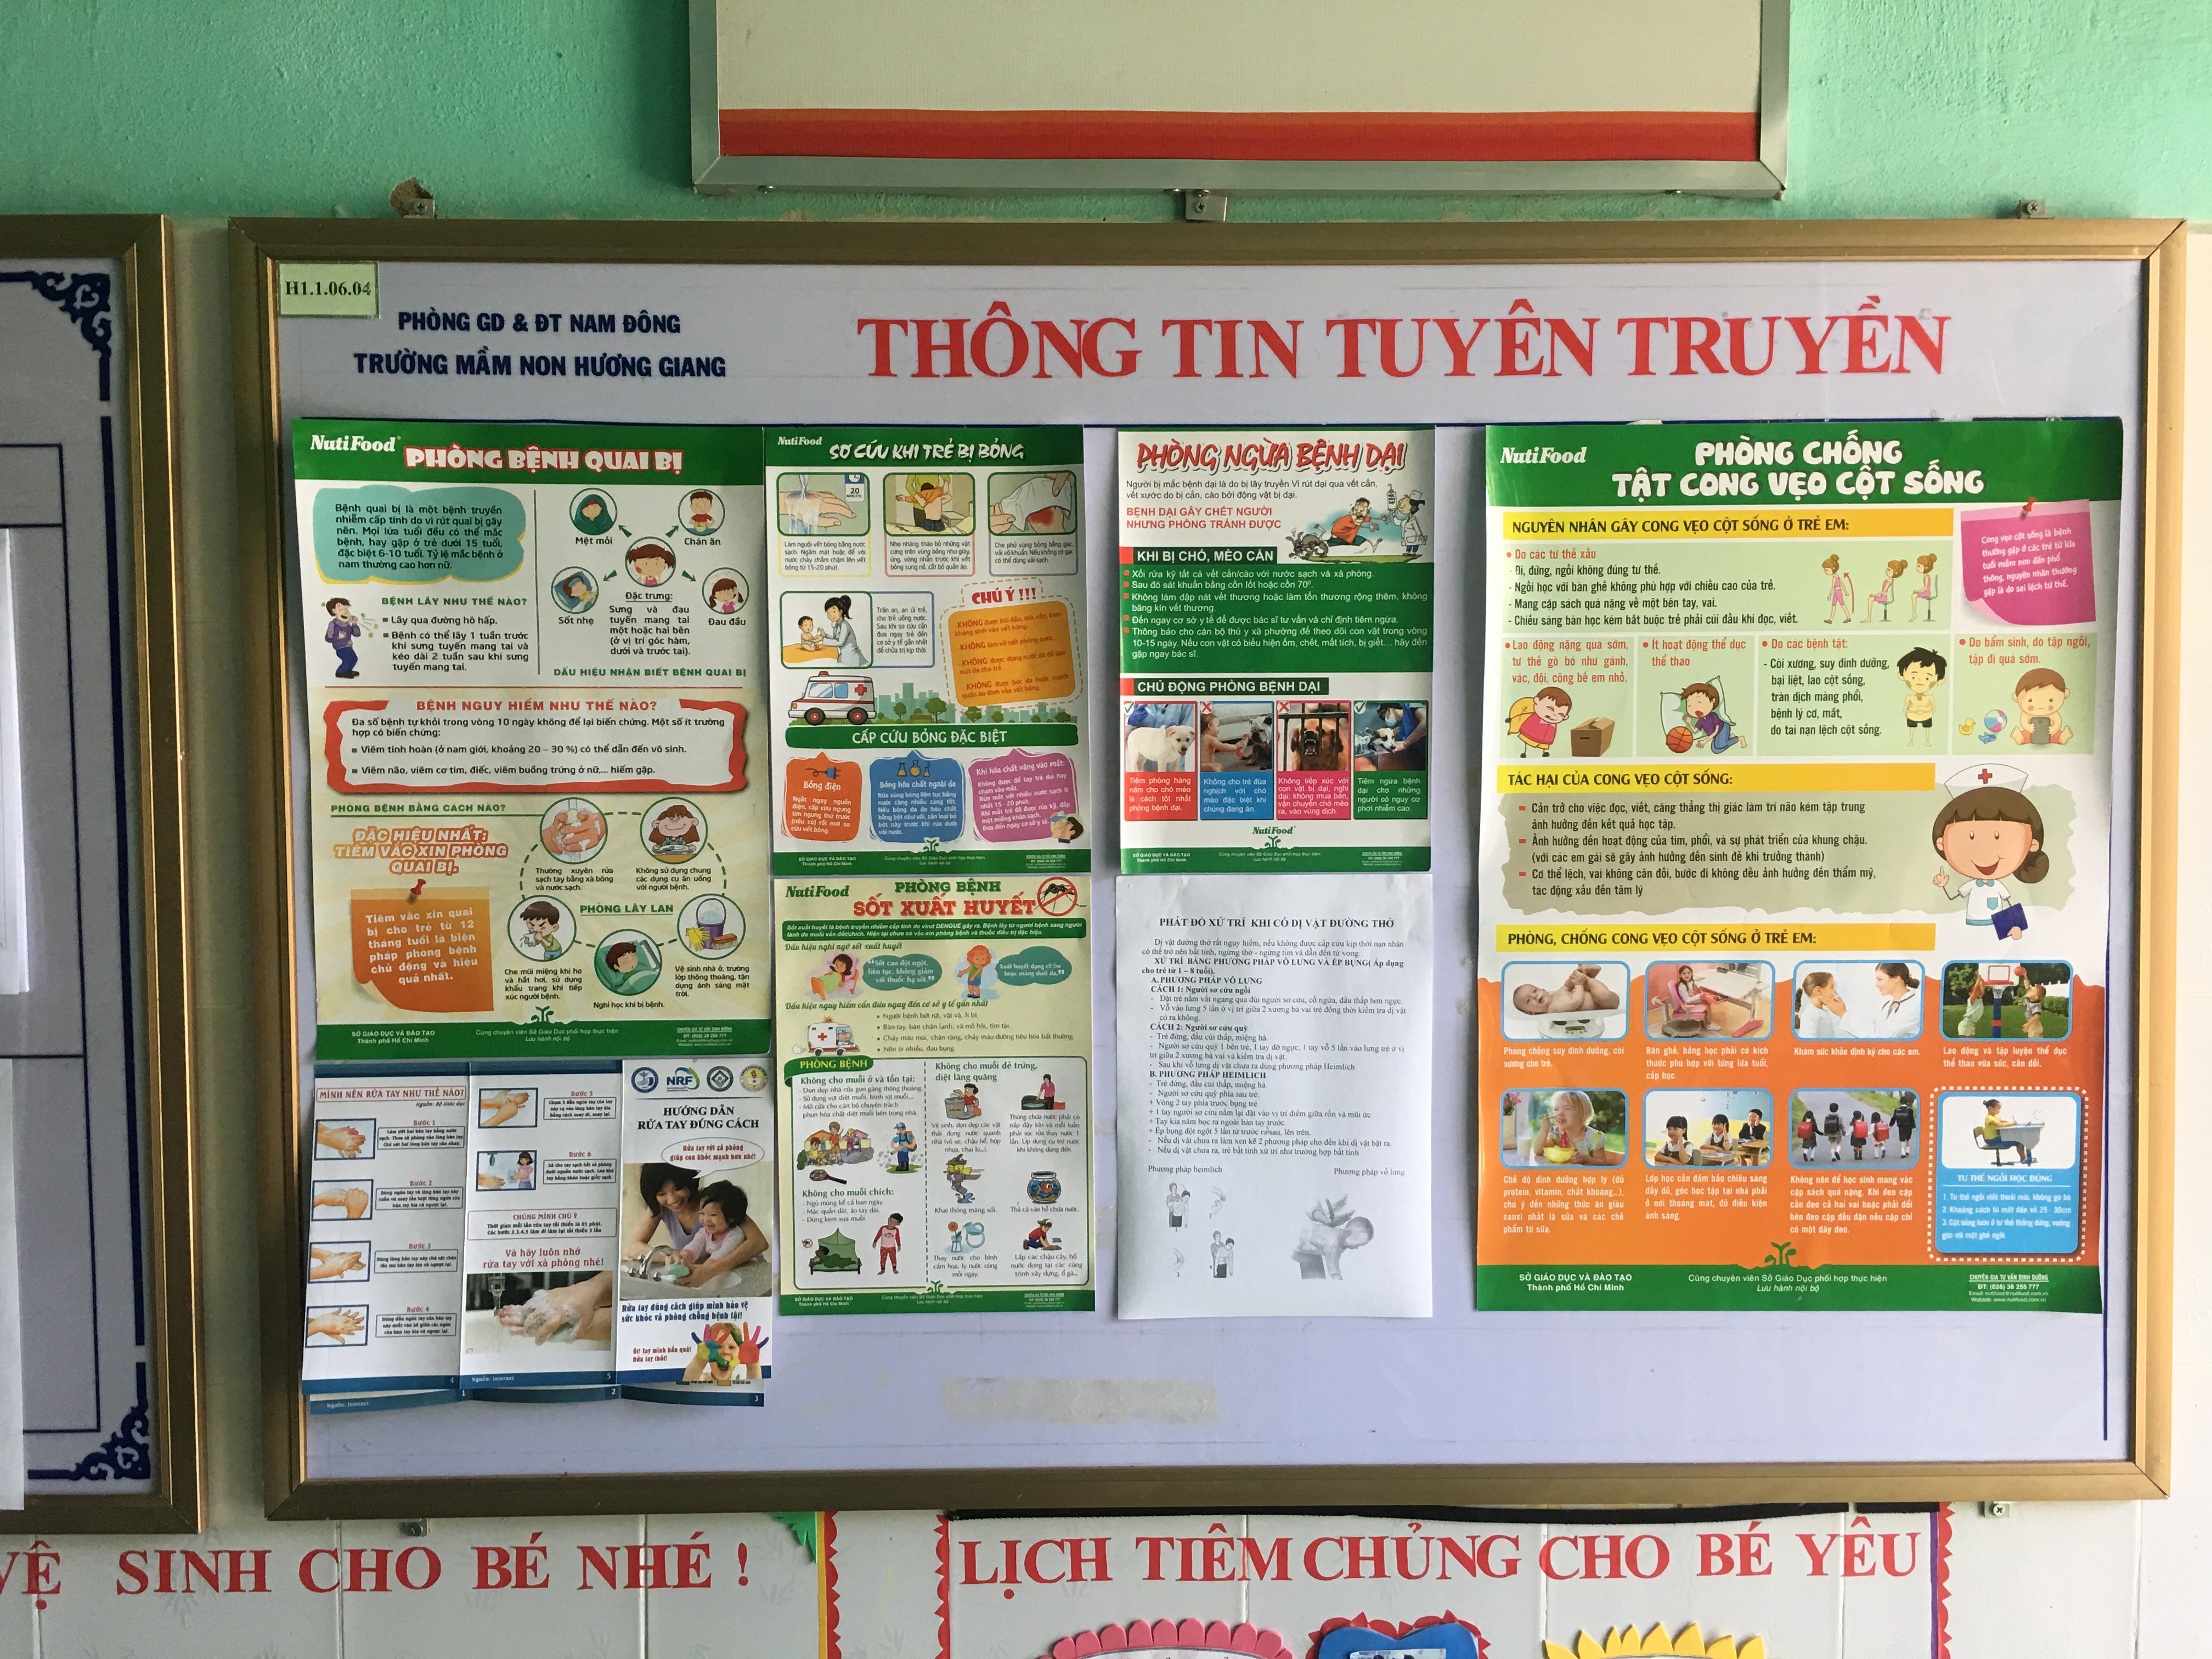 Trung Tâm Kiểm soát bệnh tật tỉnh Thừa Thiên Huế